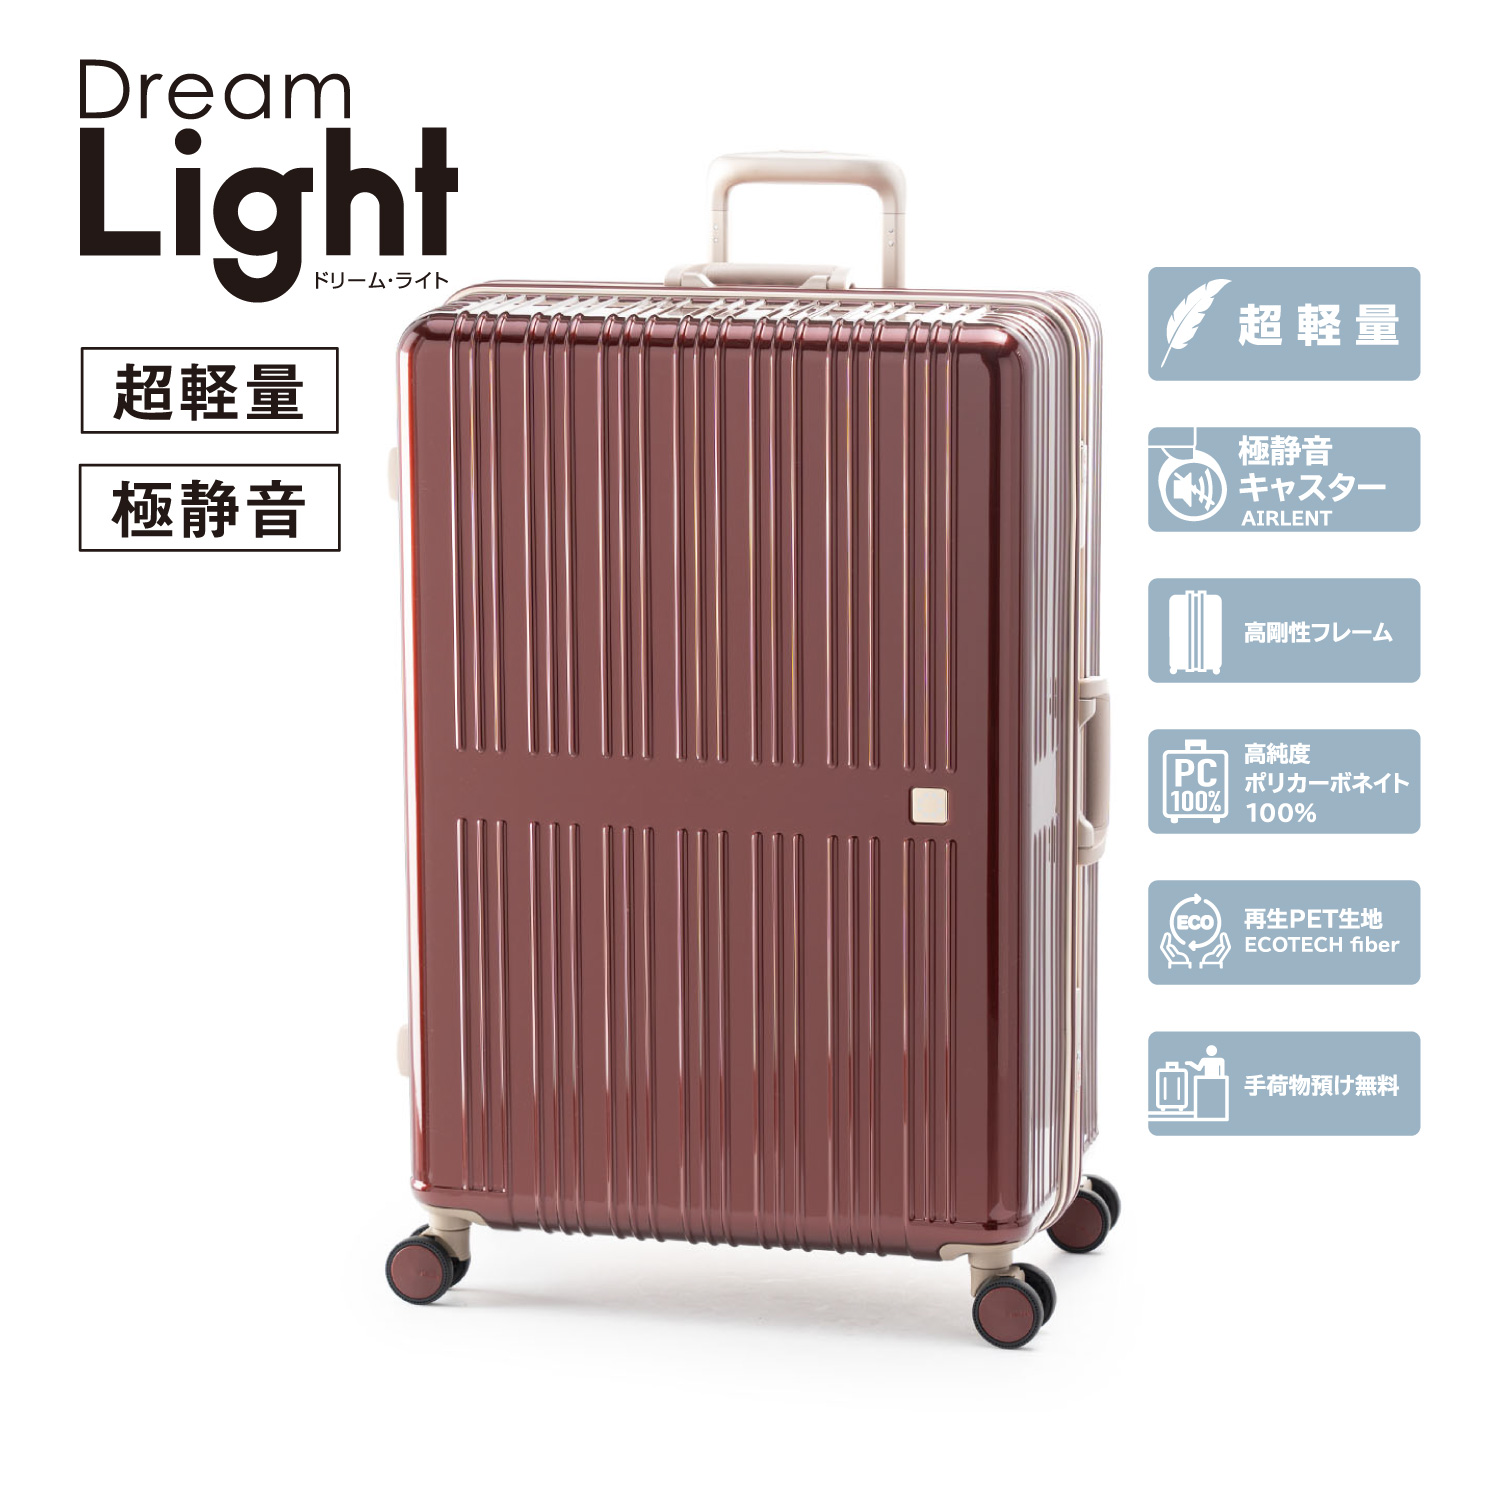 製品一覧から探す | アジア・ラゲージ 公式サイト | Asia Luggage Inc.